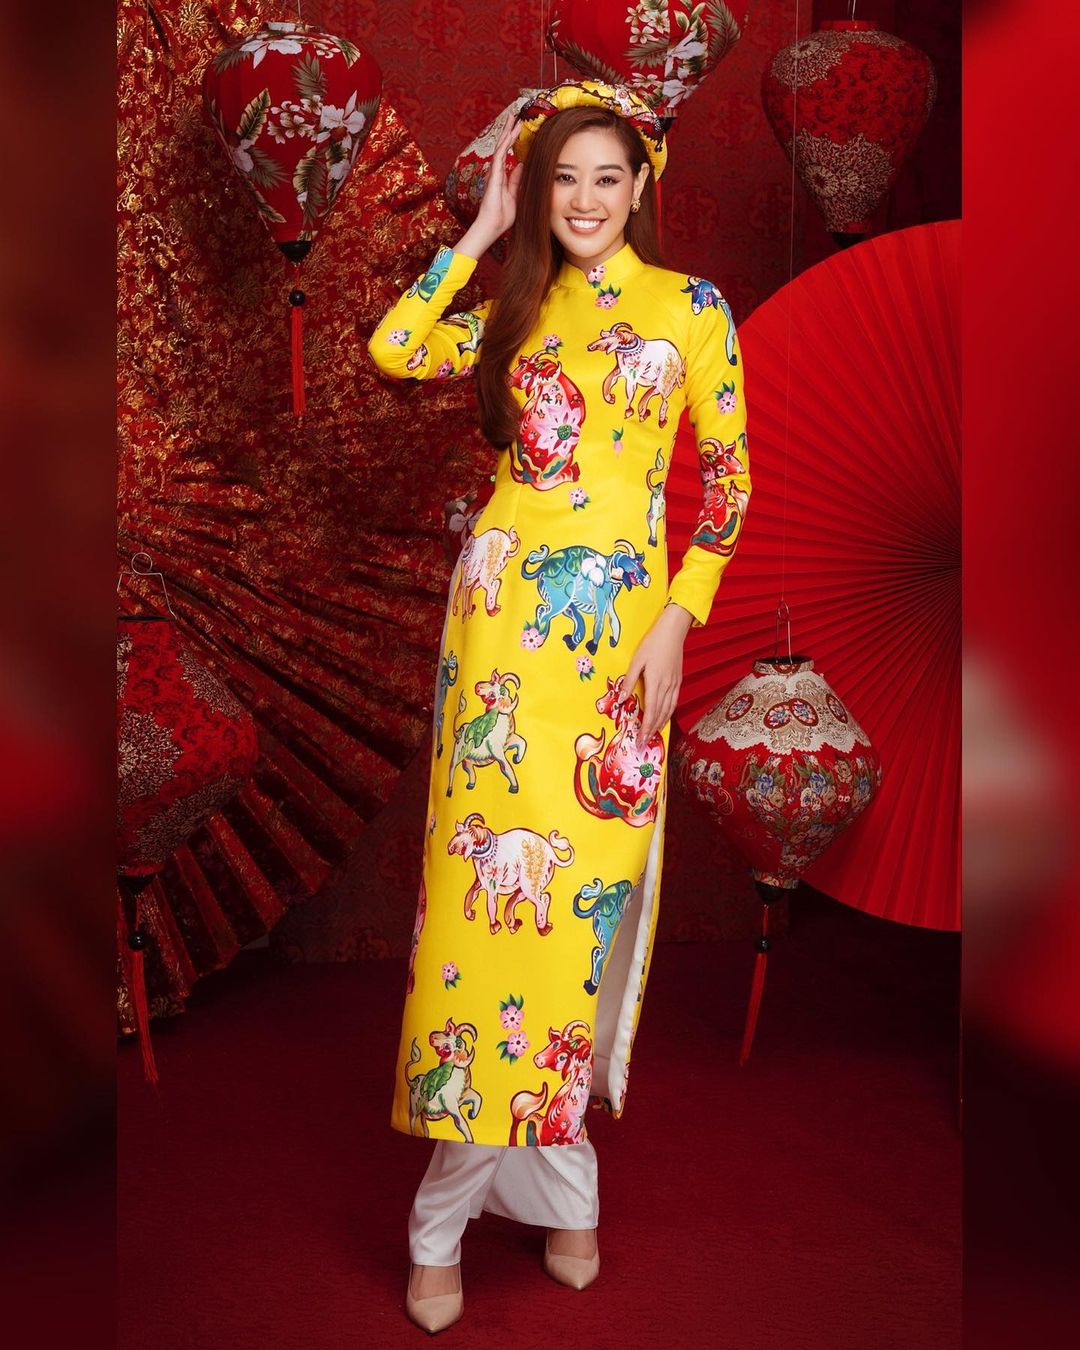 1001 sắc thái áo dài của mỹ nhân Việt ngày cận Tết, từ cách tân mới mẻ đến truyền thống quen thuộc đều có đủ - Ảnh 3.